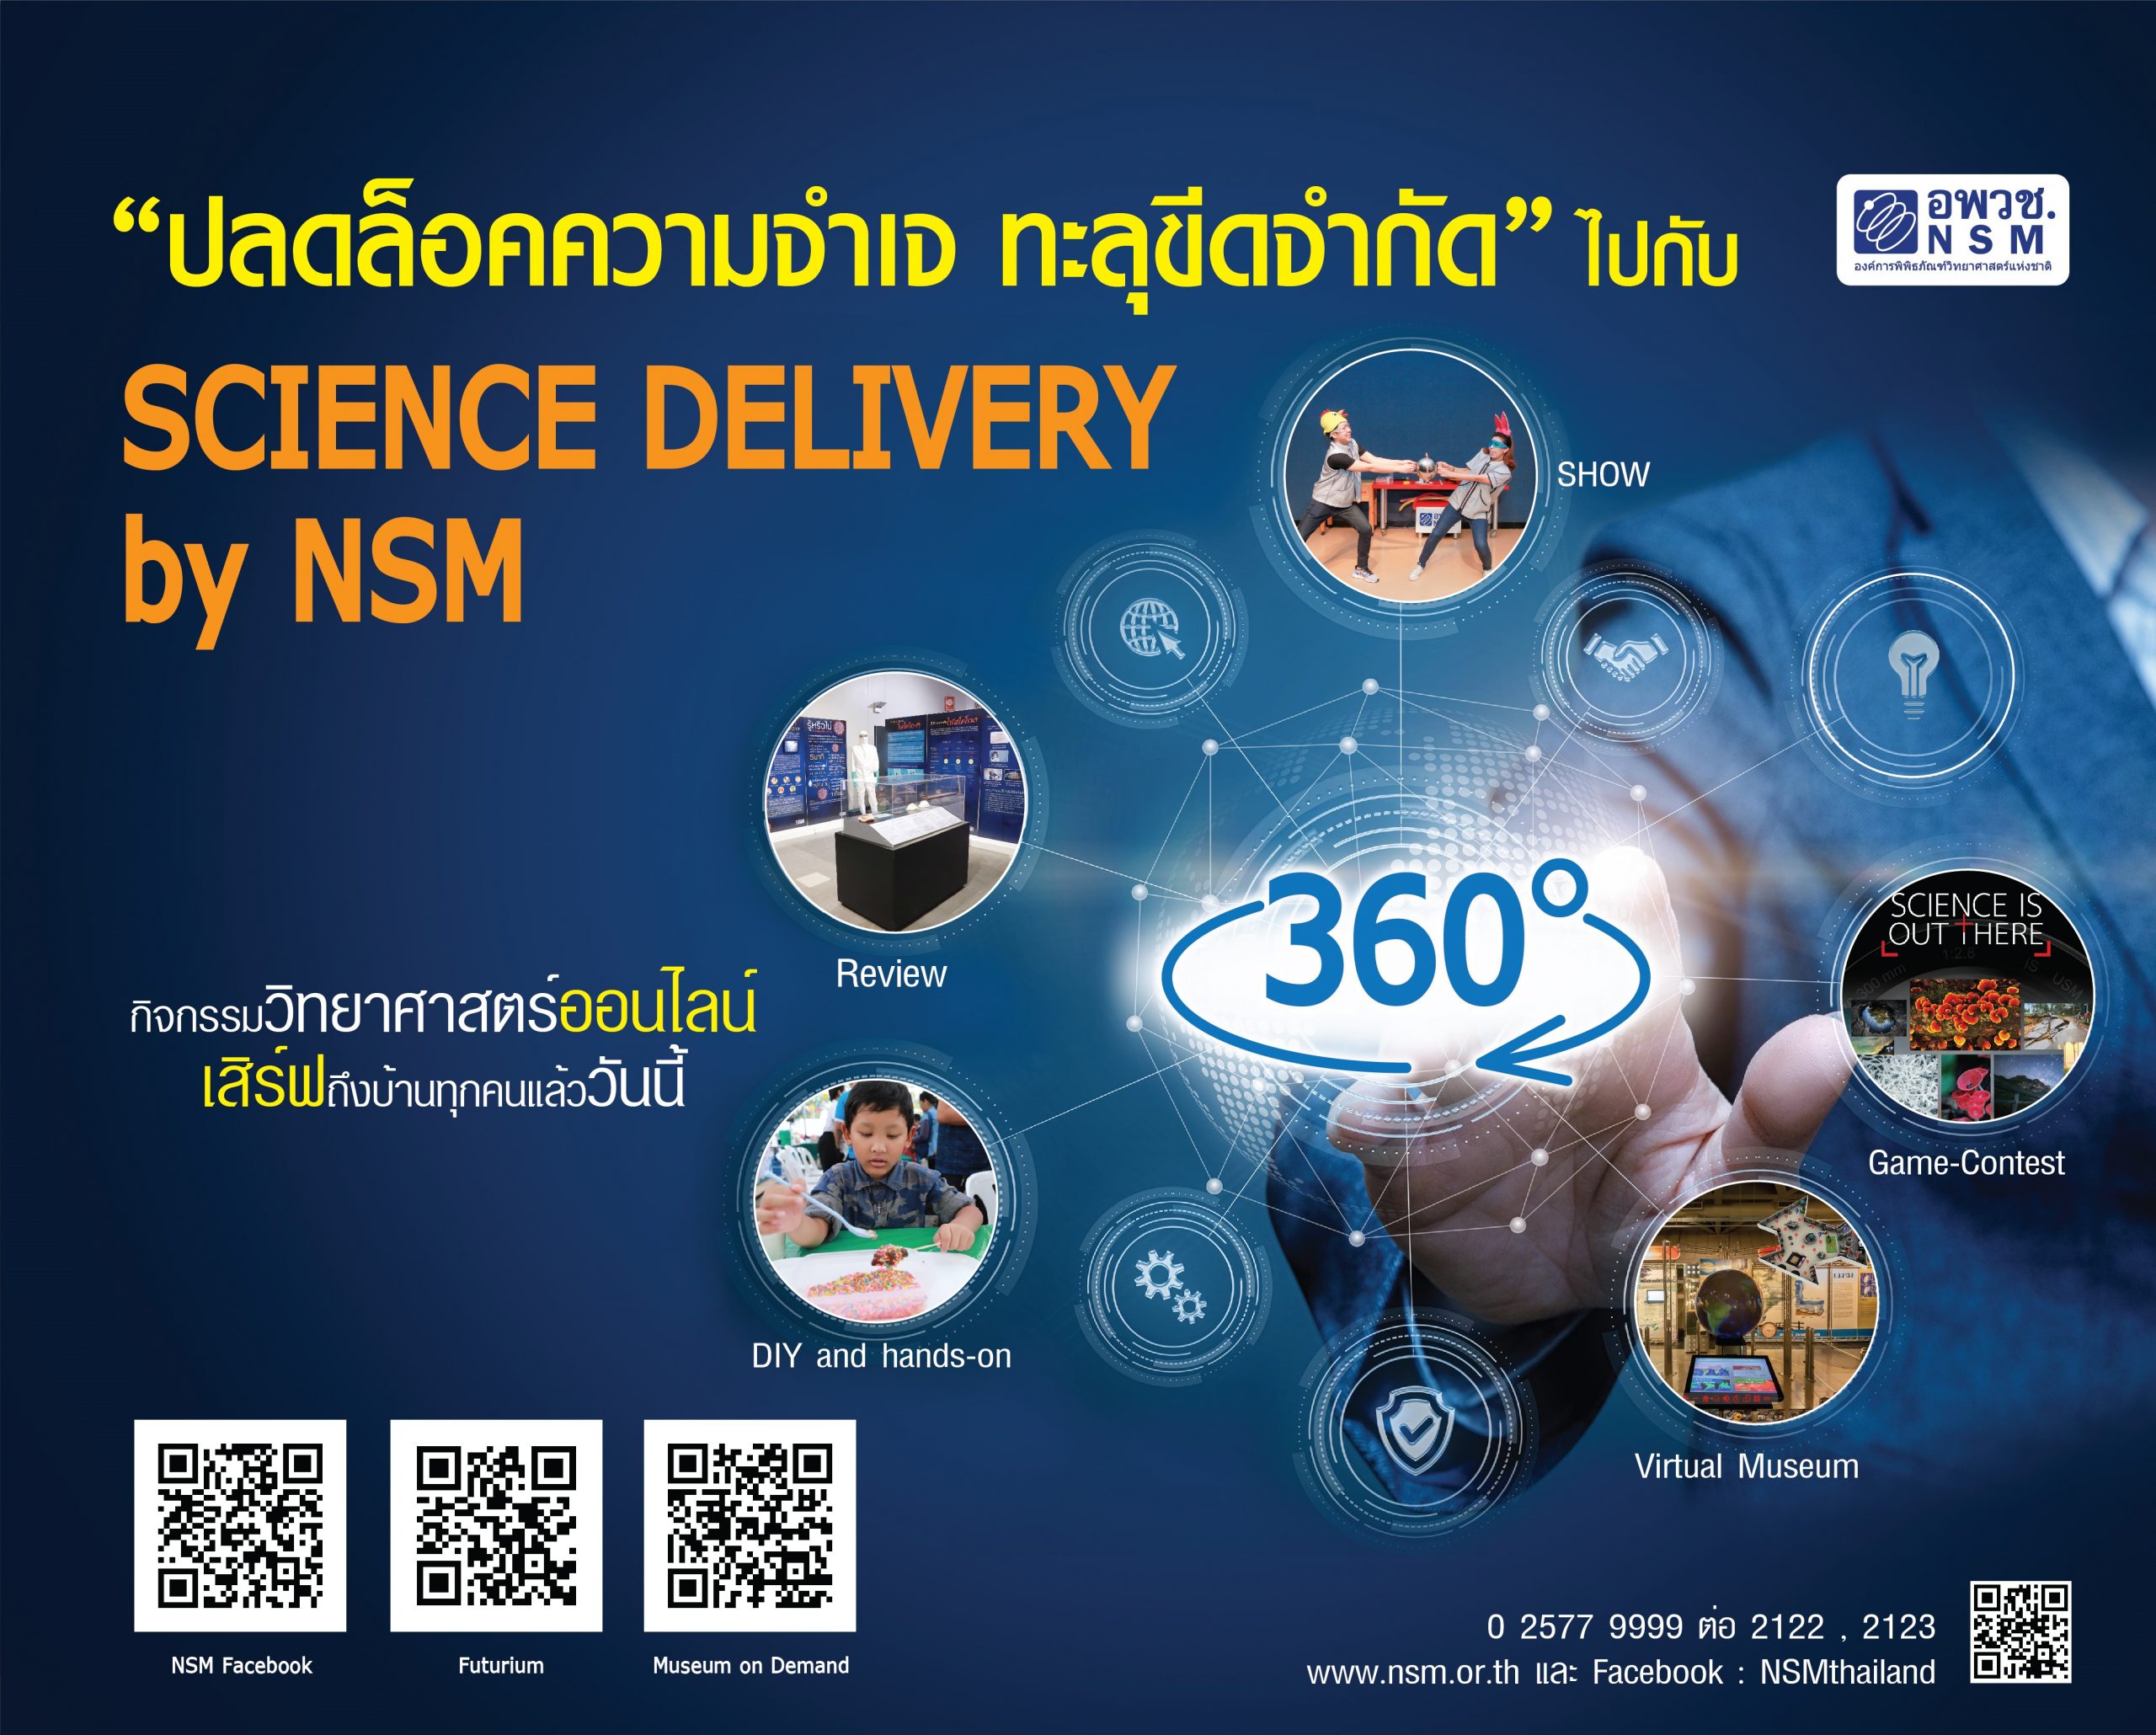 อพวช. รับมือปิดชั่วคราว ปรับกลยุทธ์มุ่งเน้นส่งเสริมวิทยาศาสตร์ออนไลน์ผ่าน โครงการ Science Delivery By NSM